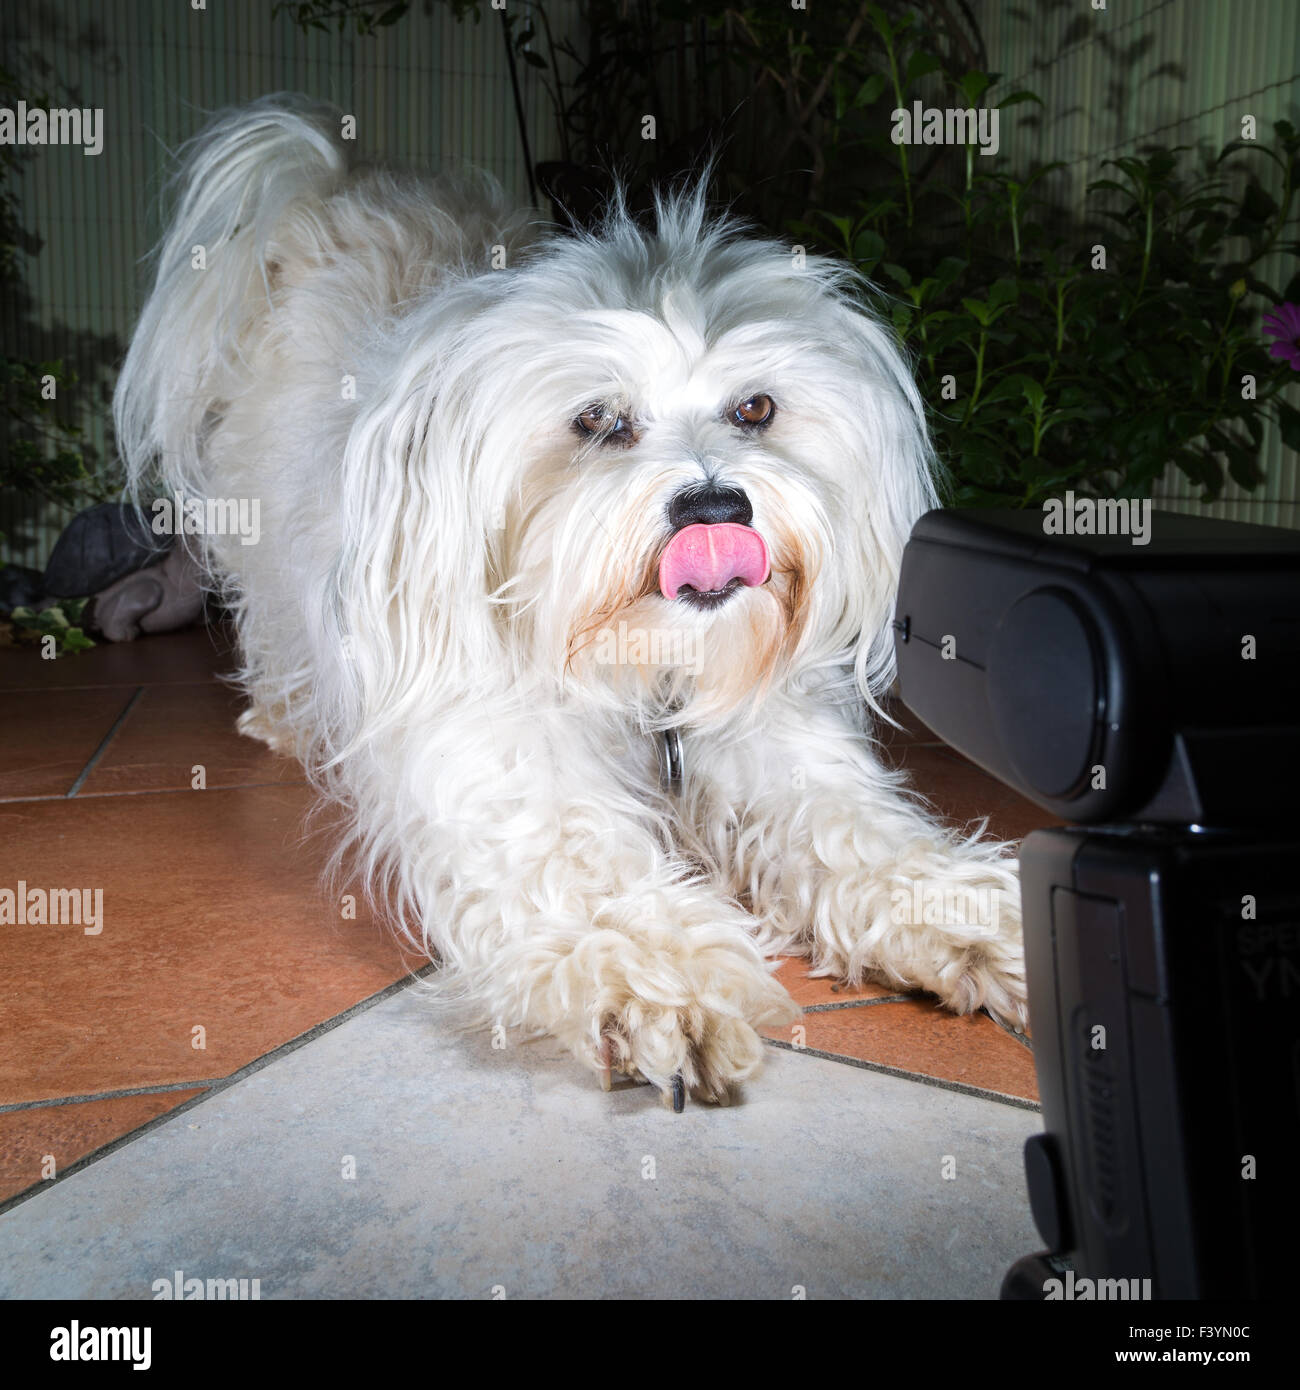 Der Hund und der Blitz Stockfotografie - Alamy